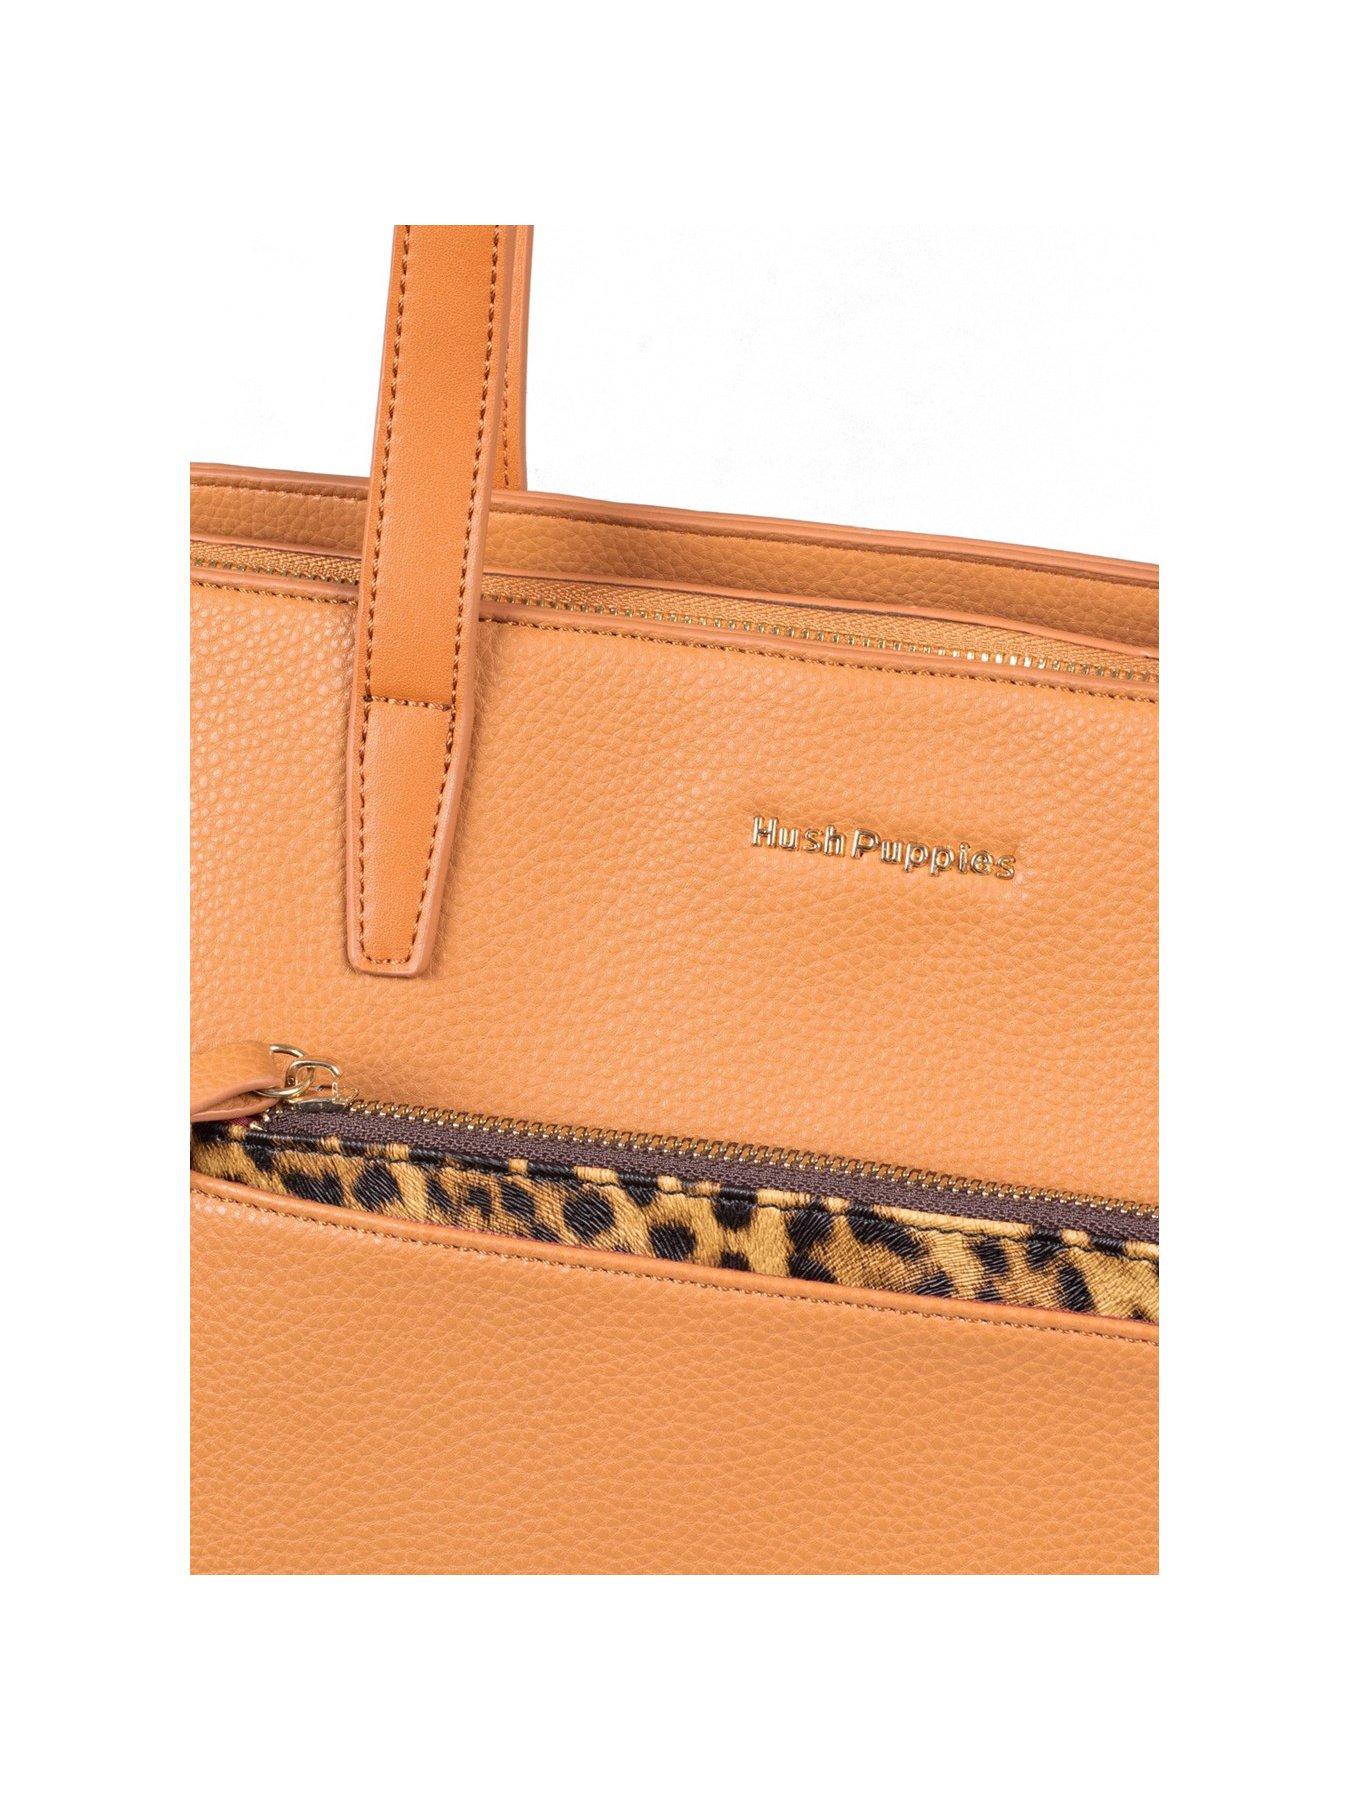 Bags & Purses Sadie Leopard Tote Bag - Brown